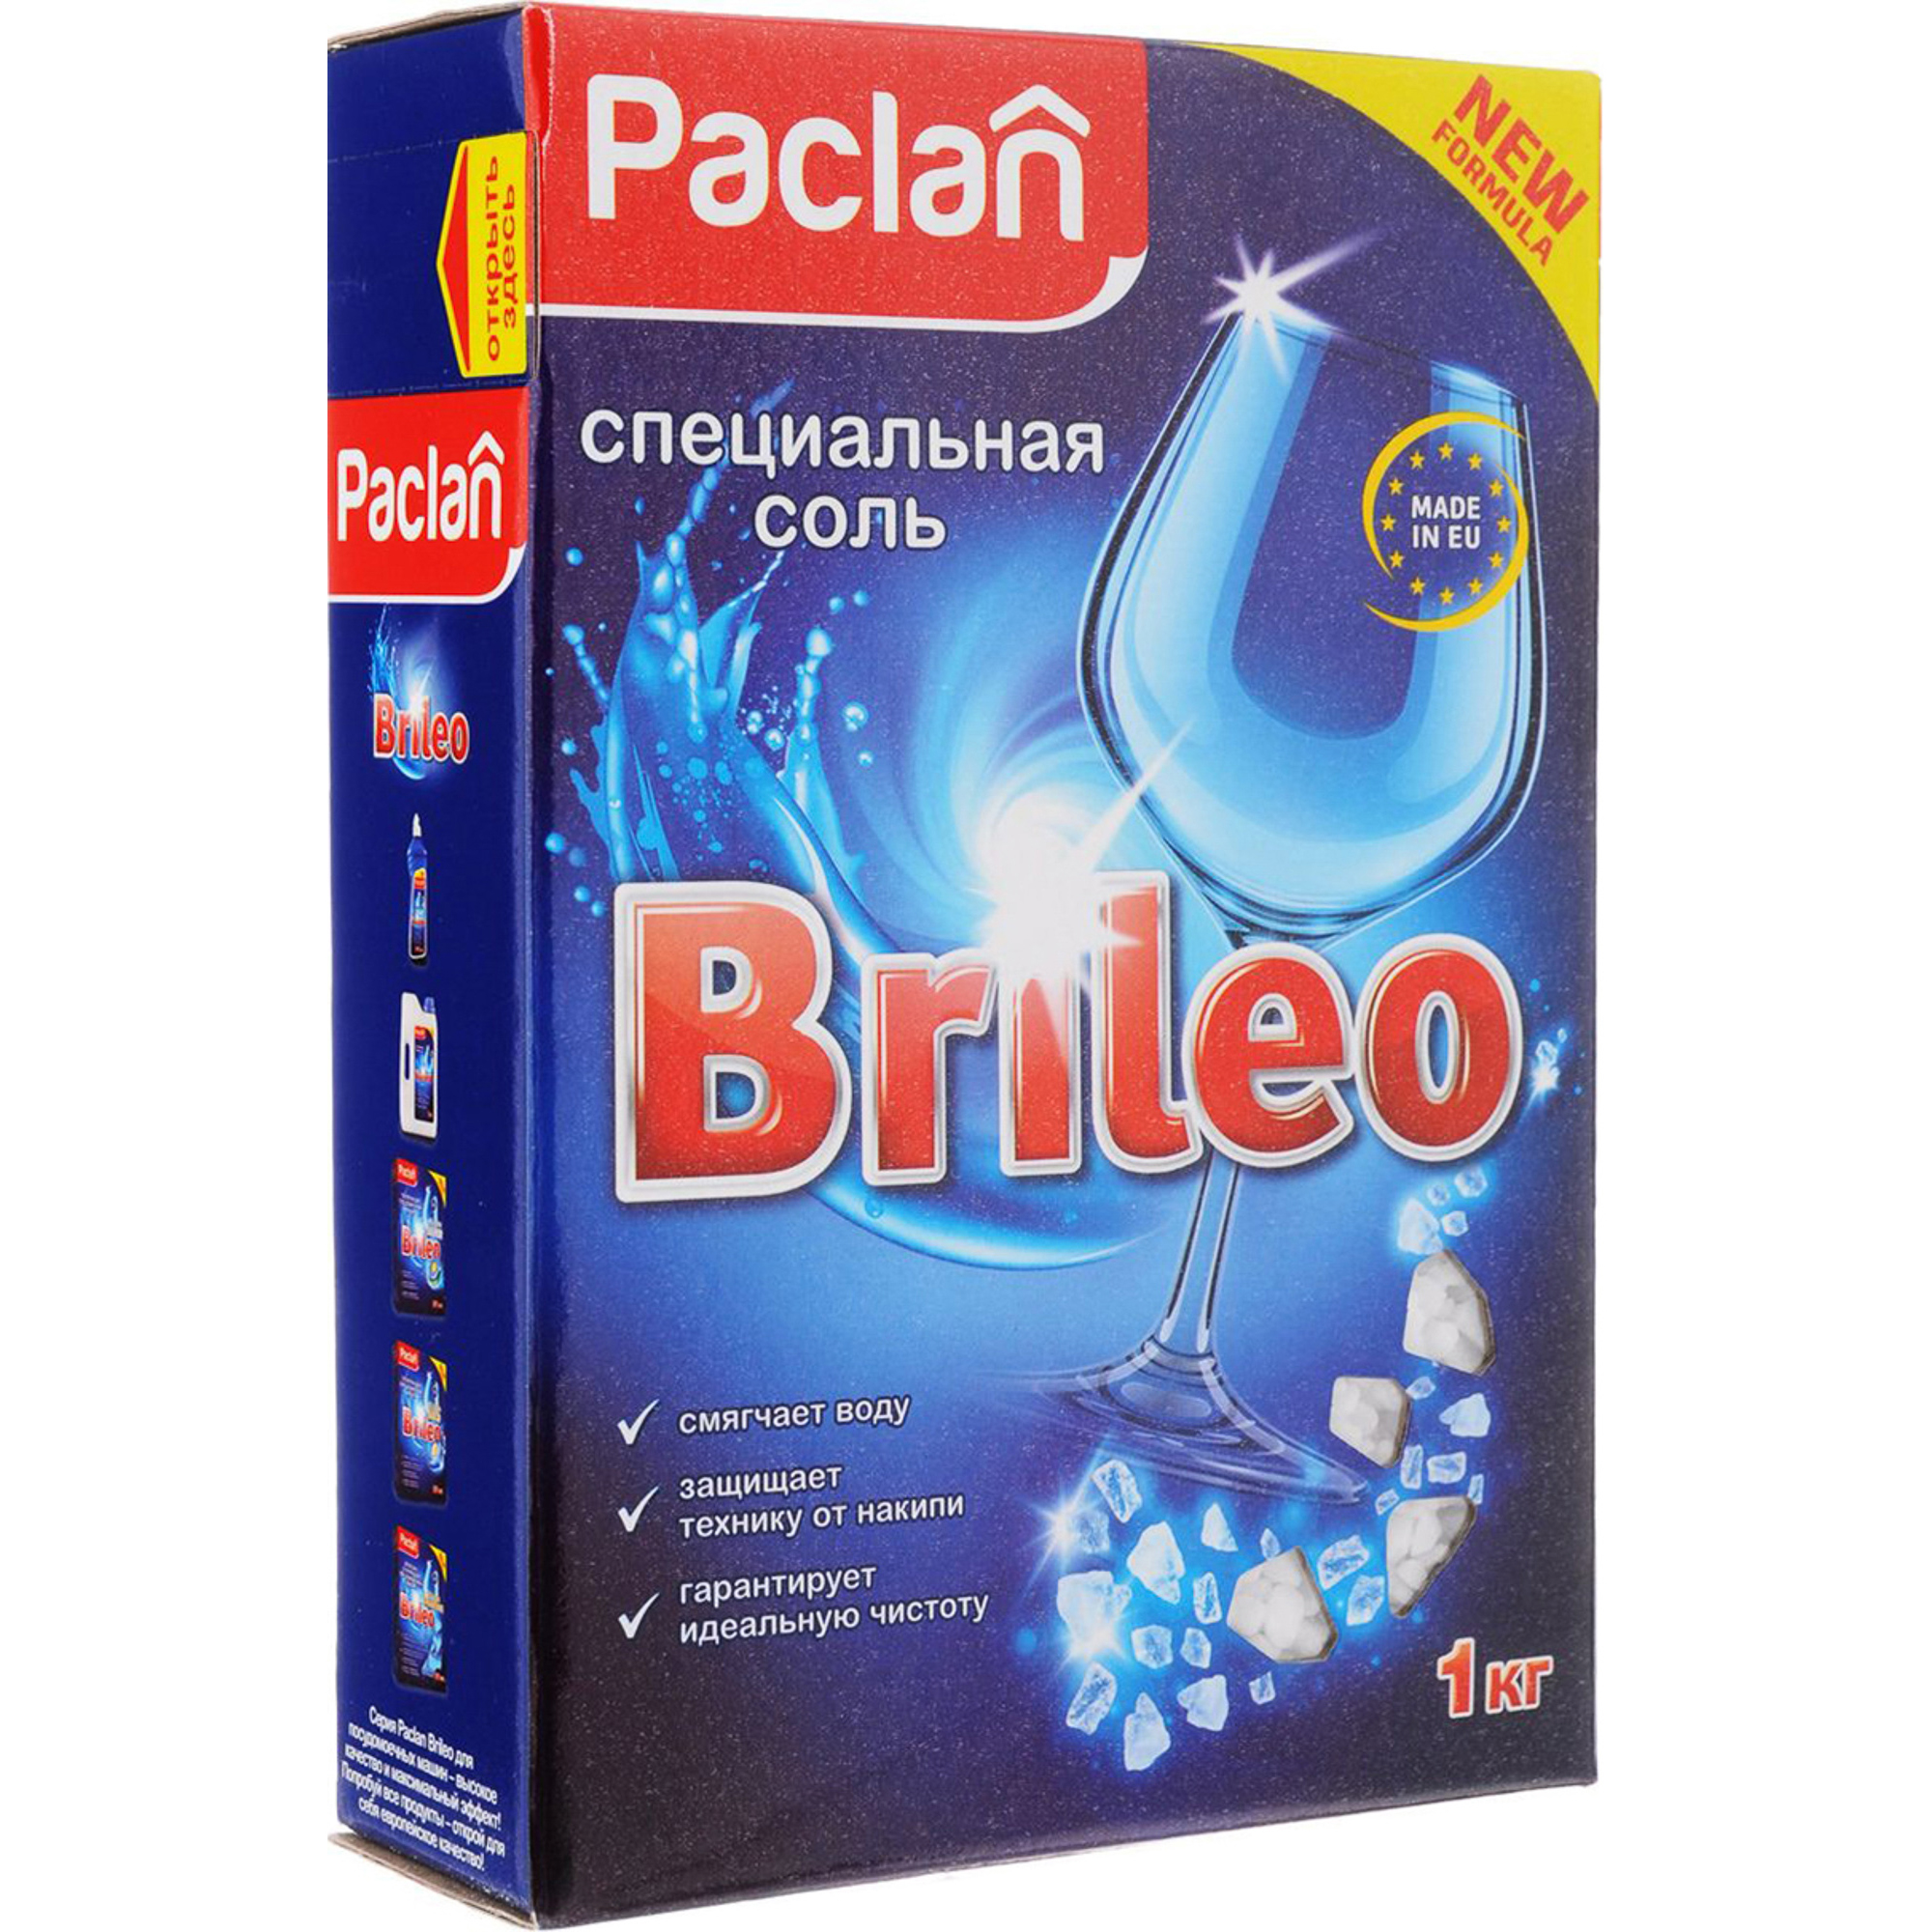 Где купить Специальная соль Paclan Brileo для посудомоечных машин 1 кг Paclan 